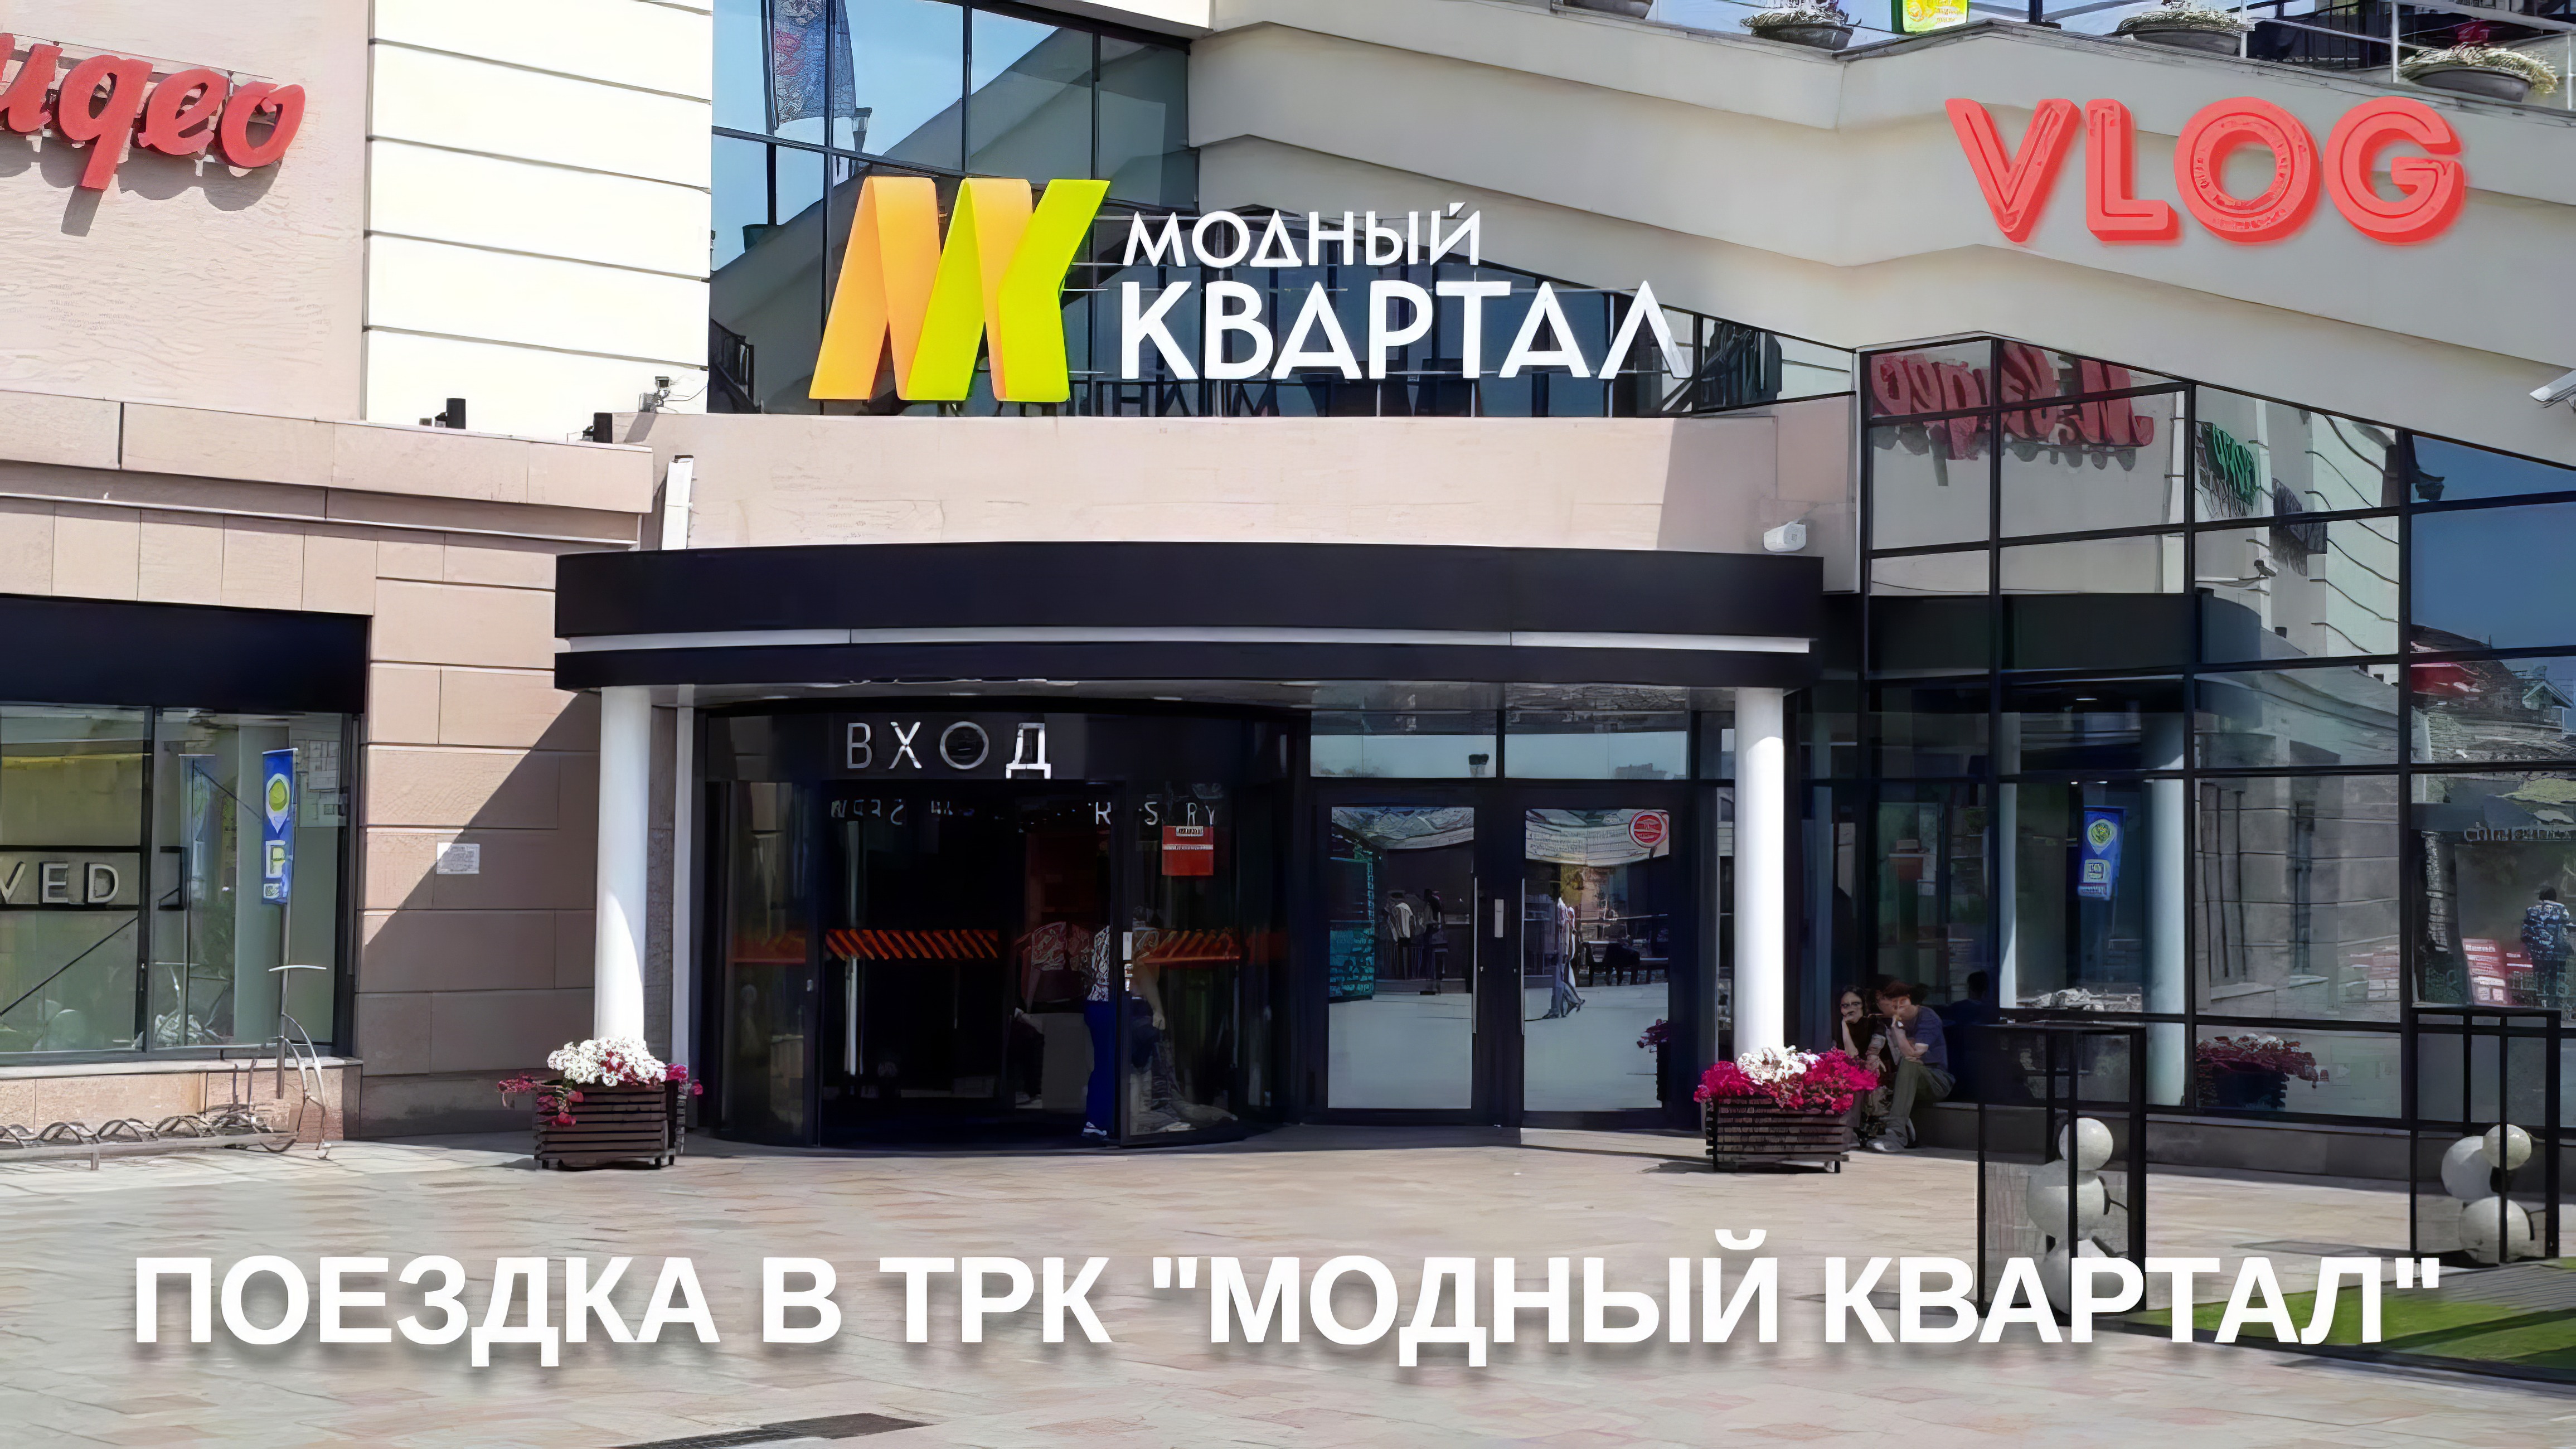 Новый VLOG: Едем в ТРК "Модный квартал" и прогуляться по Иркутску